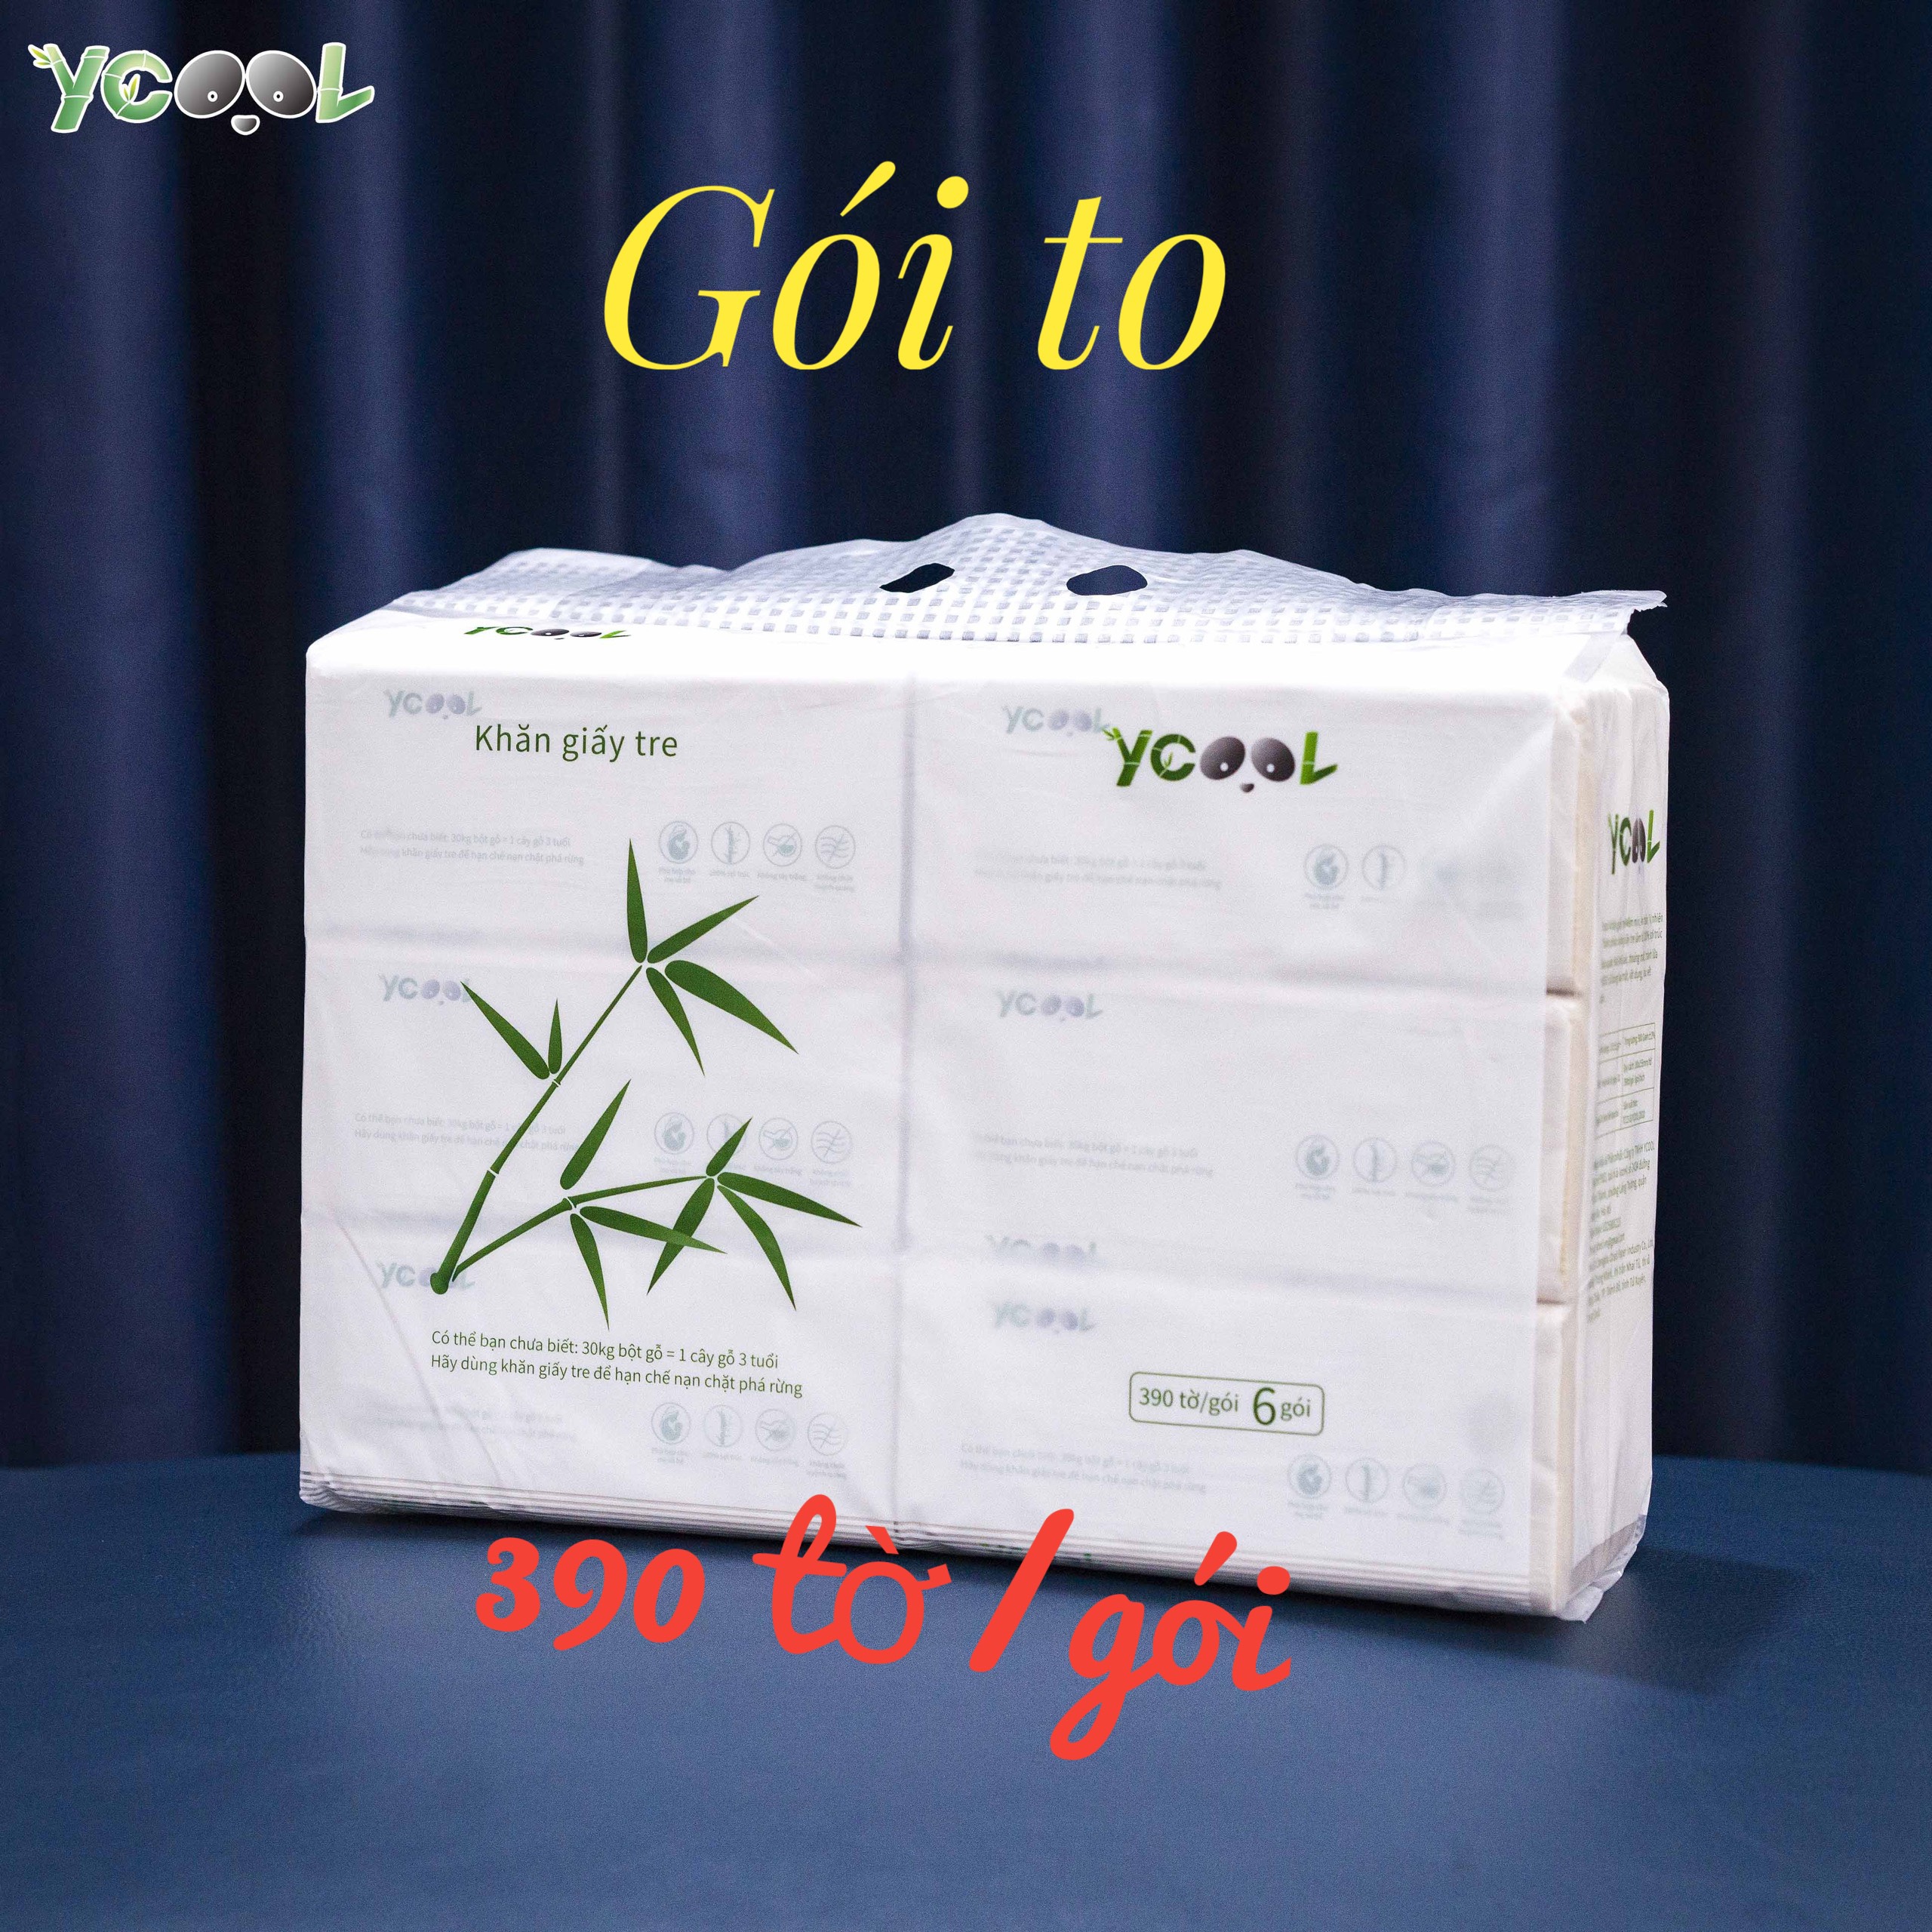 Combo 6 gói Giấy ăn gấu trúc giấy vệ sinh khăn giấy tre YCOOL gói to 390